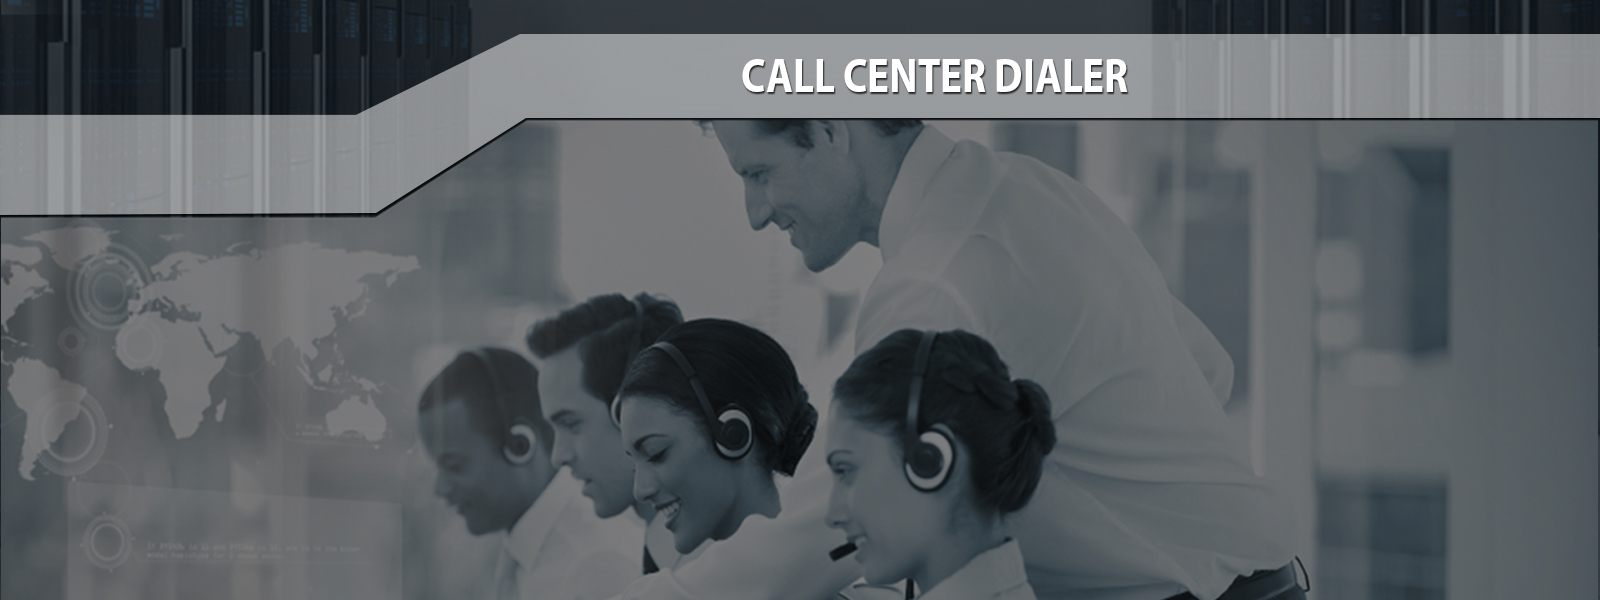 Call Center Dialer